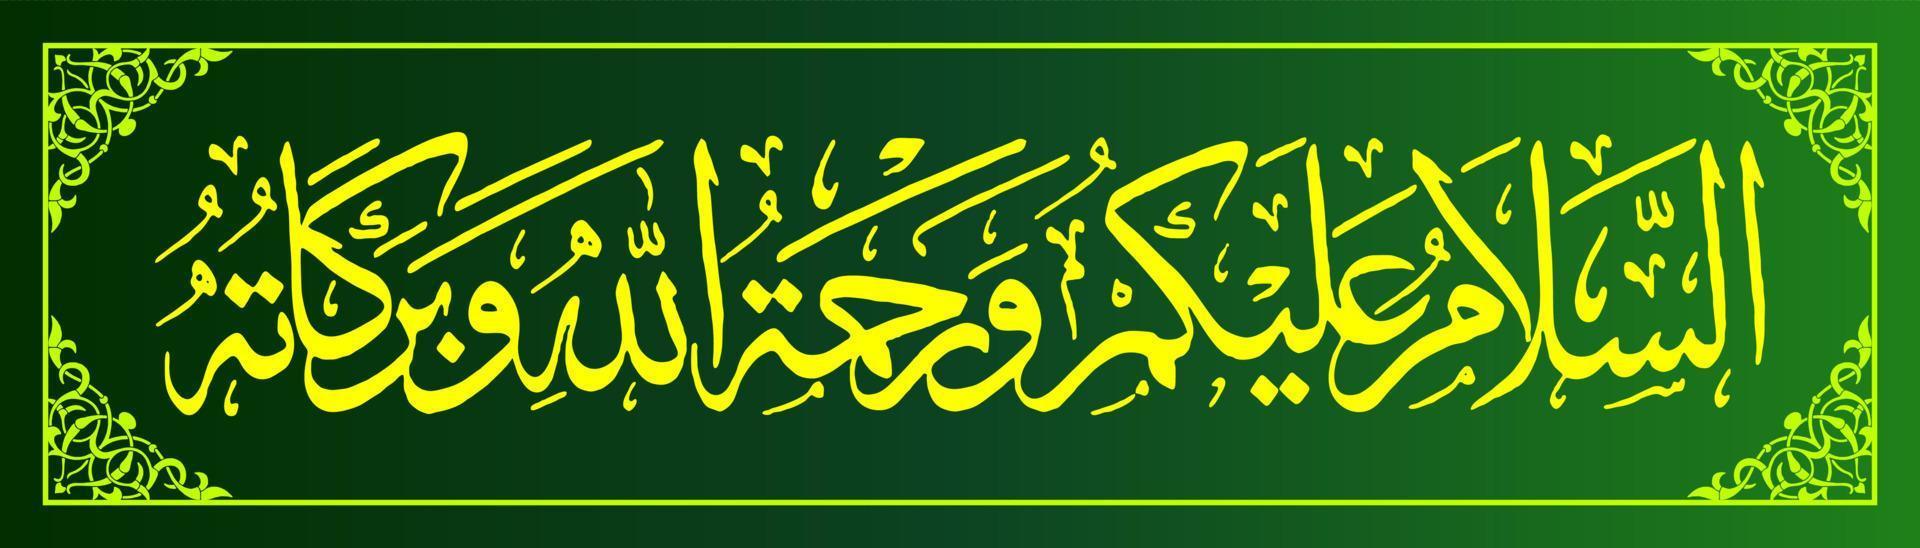 Arabo calligrafia traduzione Maggio Allah conferire il suo sicurezza e misericordia su voi. vettore